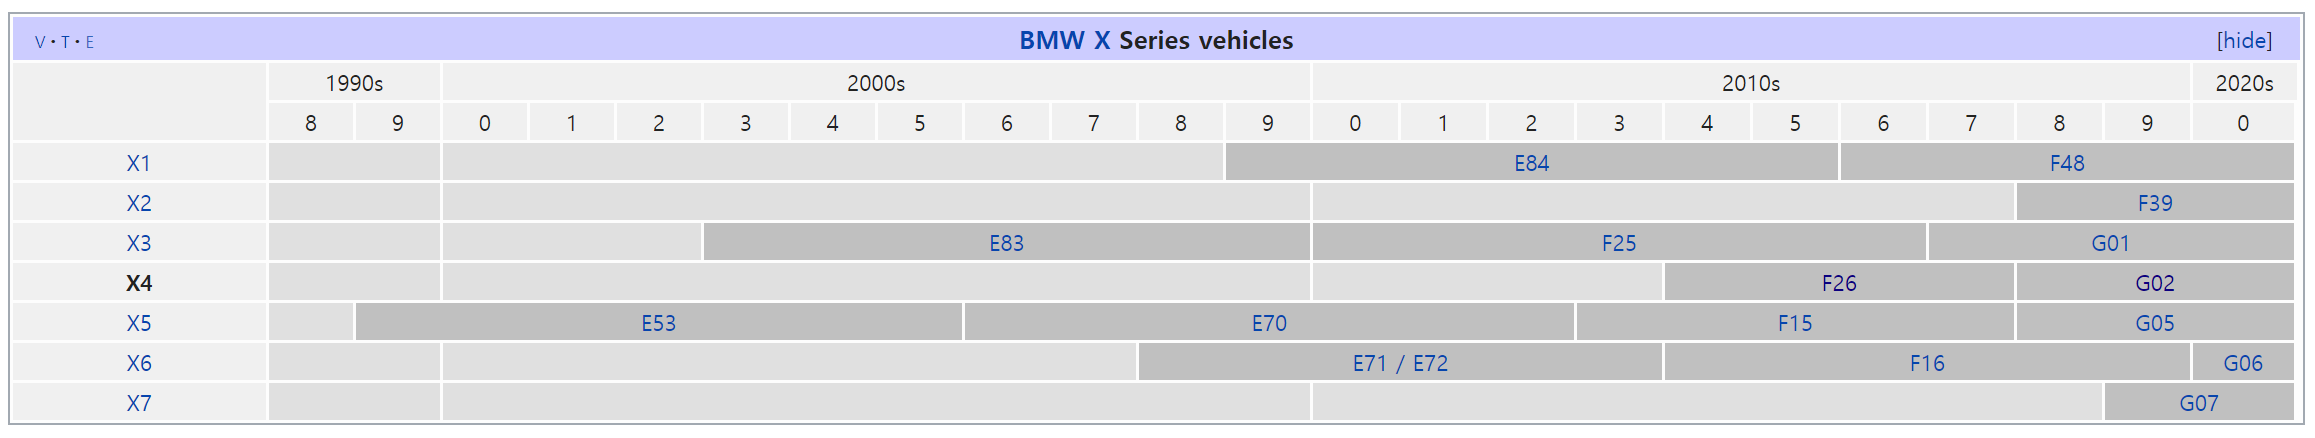 BMW X 시리즈 라인업 역사